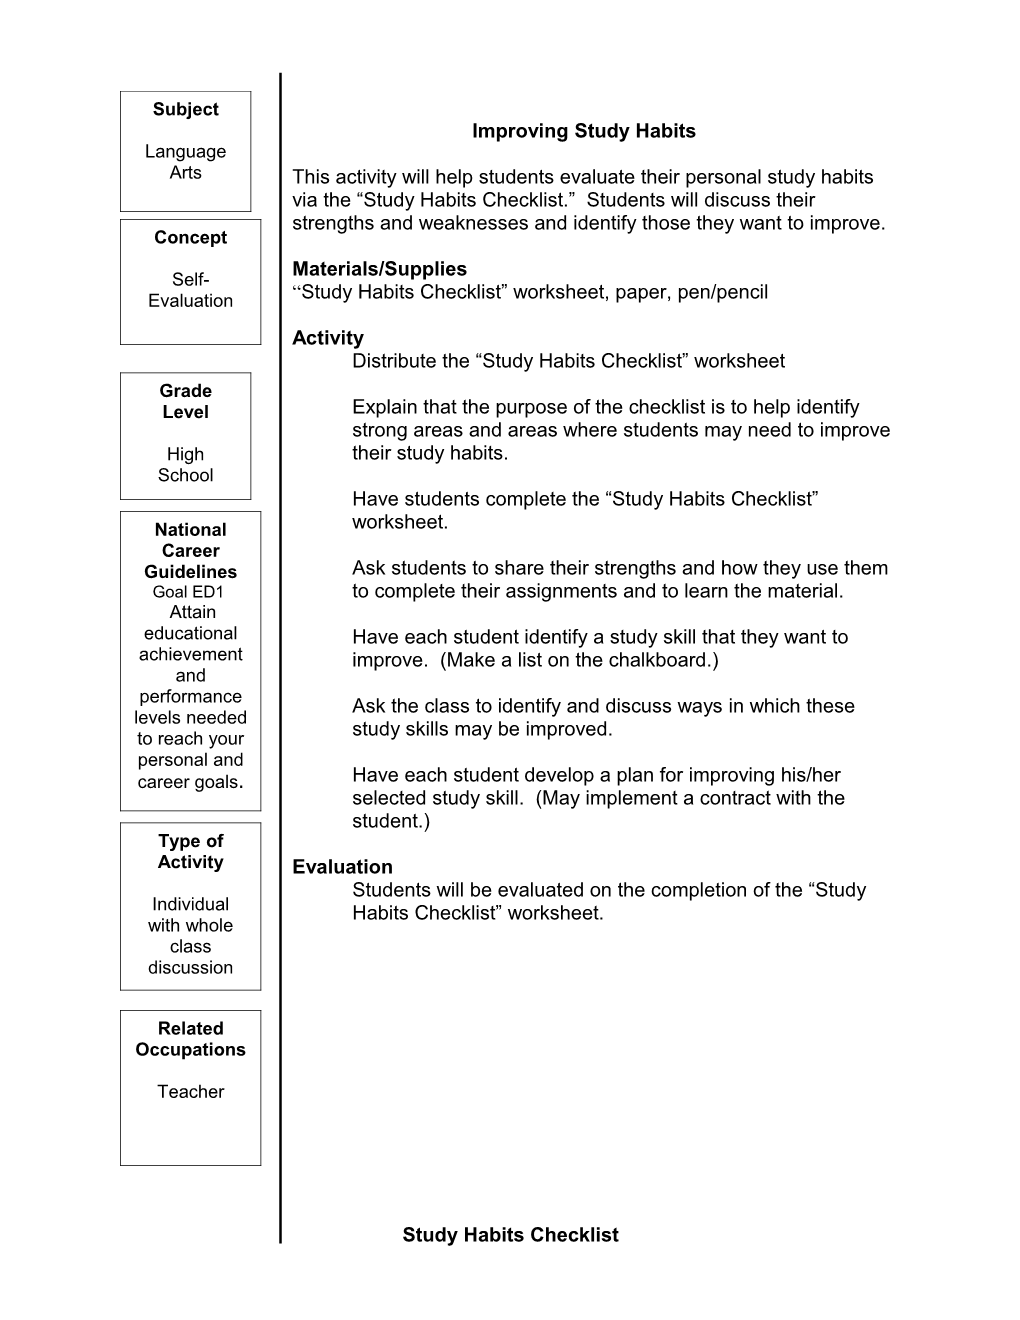 Study Habits Checklist Worksheet, Paper, Pen/Pencil